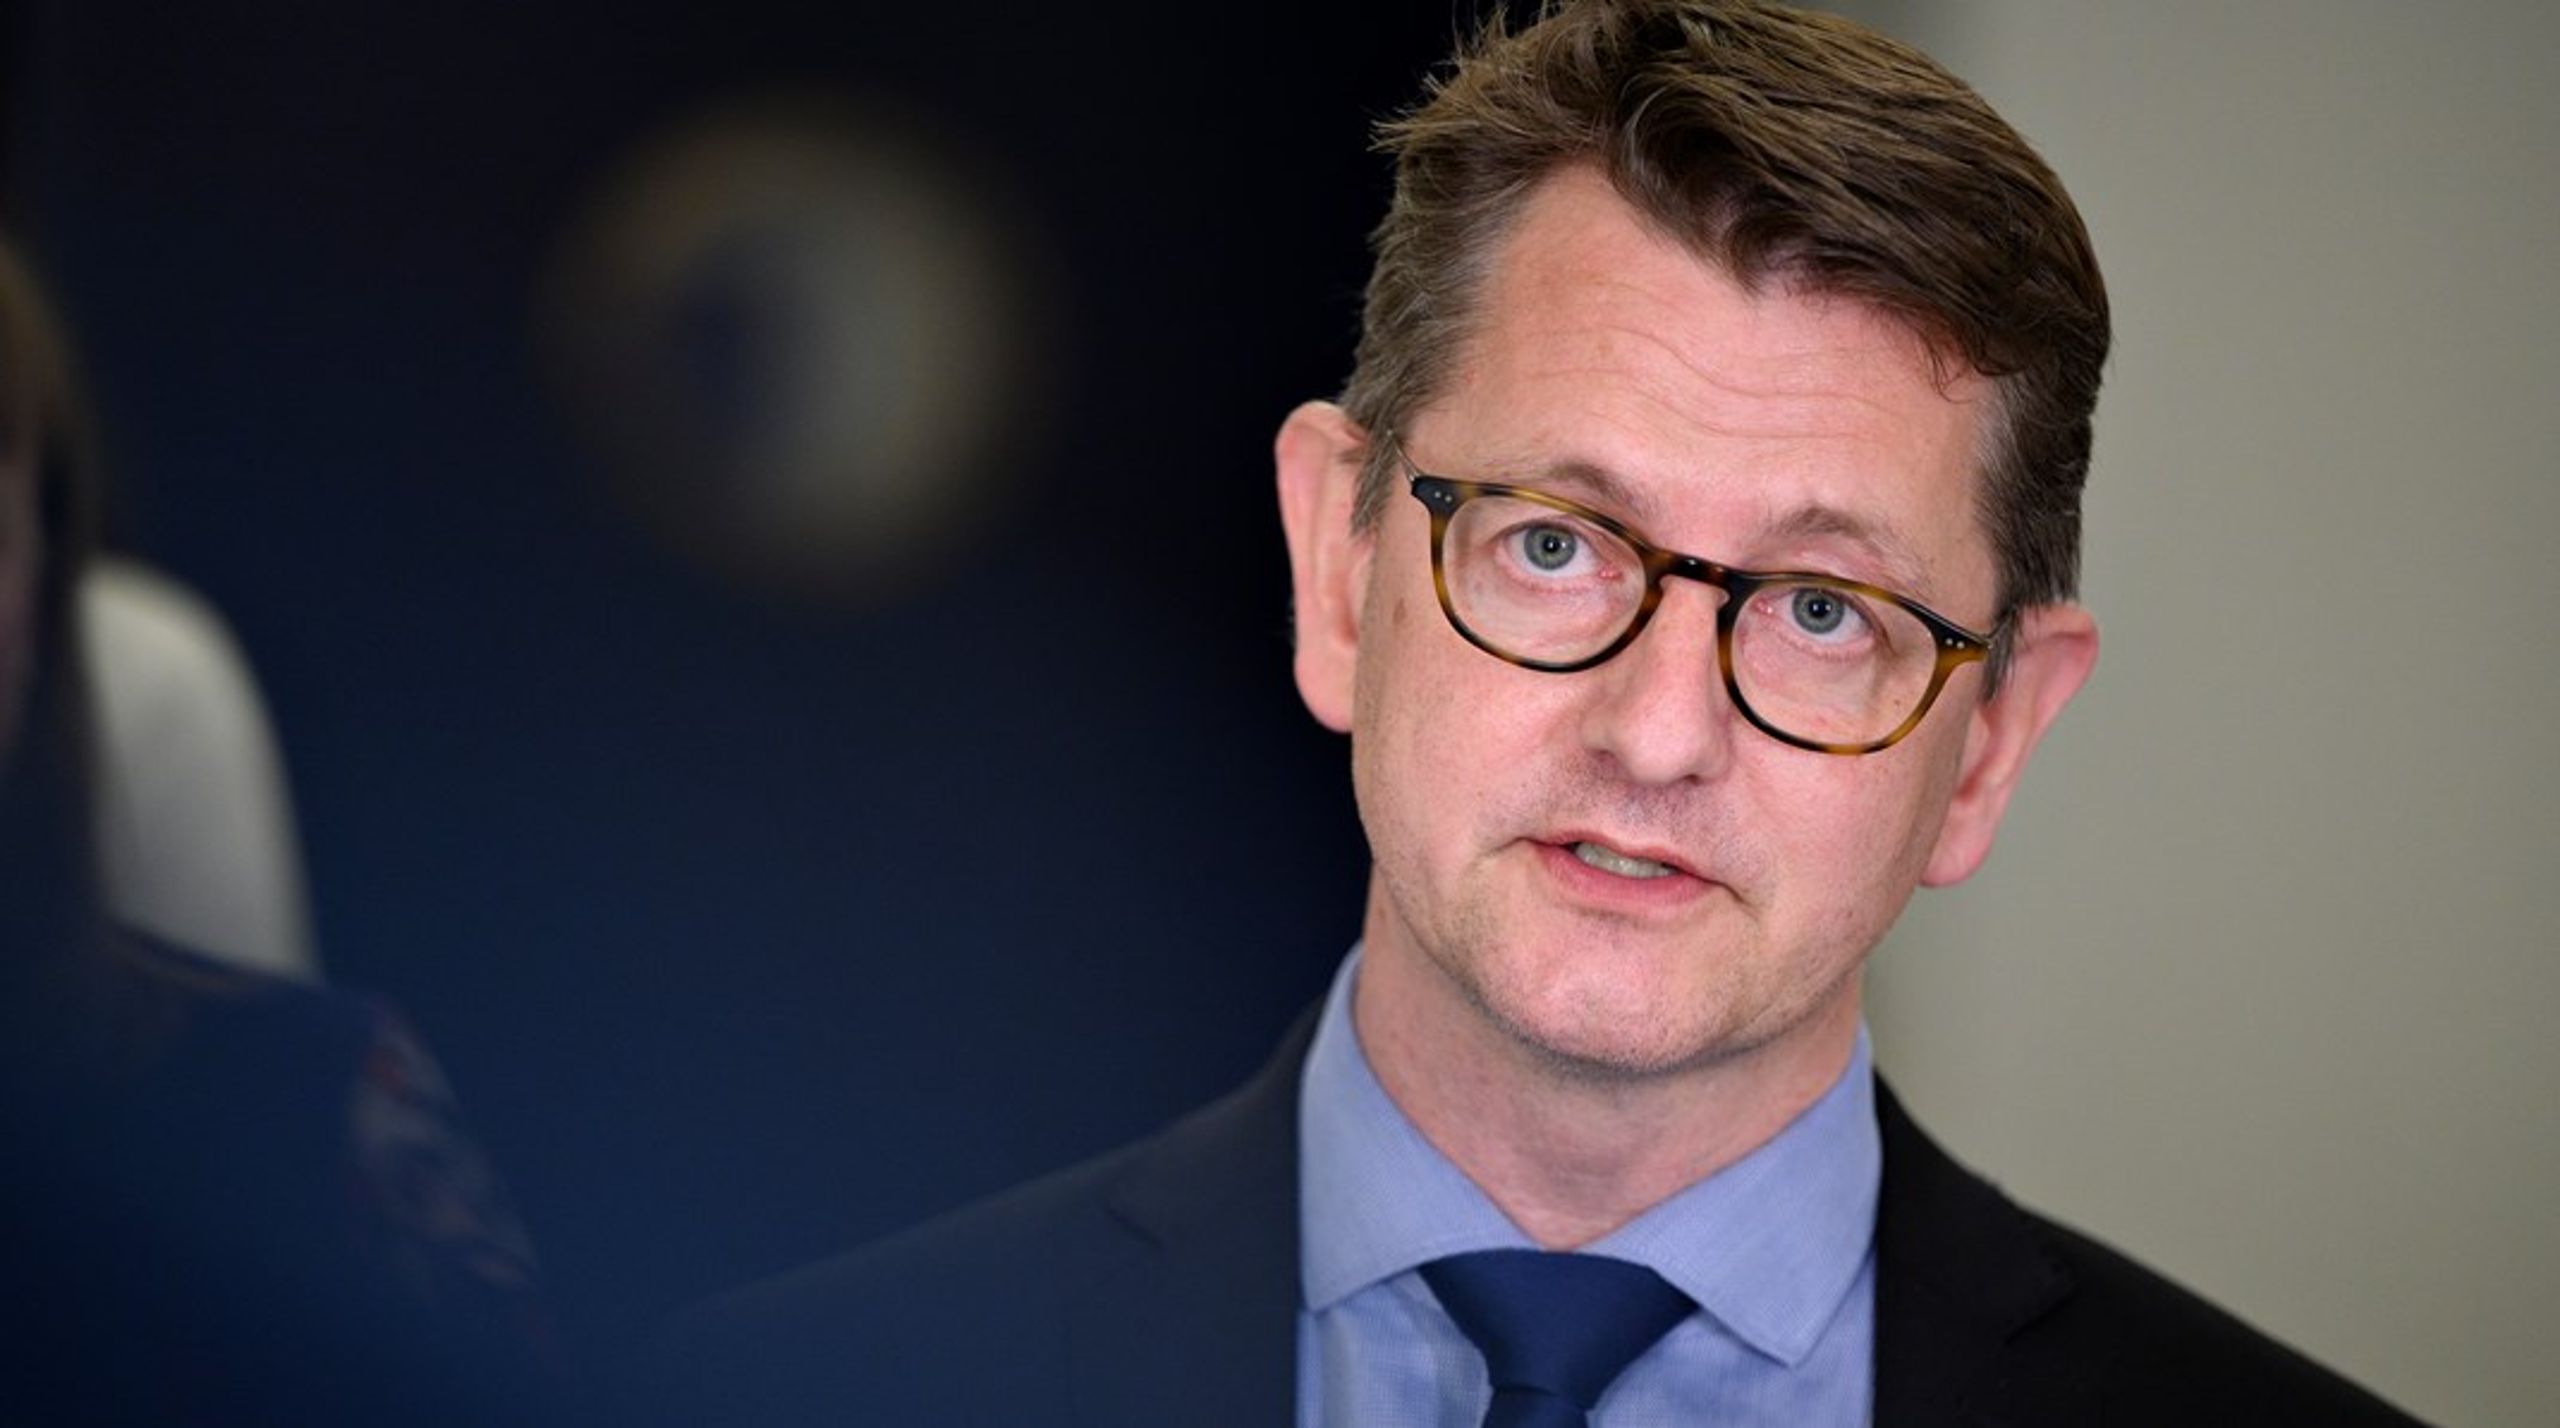 Torsten Schack Pedersen, erhvervsordfører i Venstre, har mistet&nbsp;tålmodigheden over forløbet med iværksætterforhandlingerne, som er blevet udskudt flere gange.